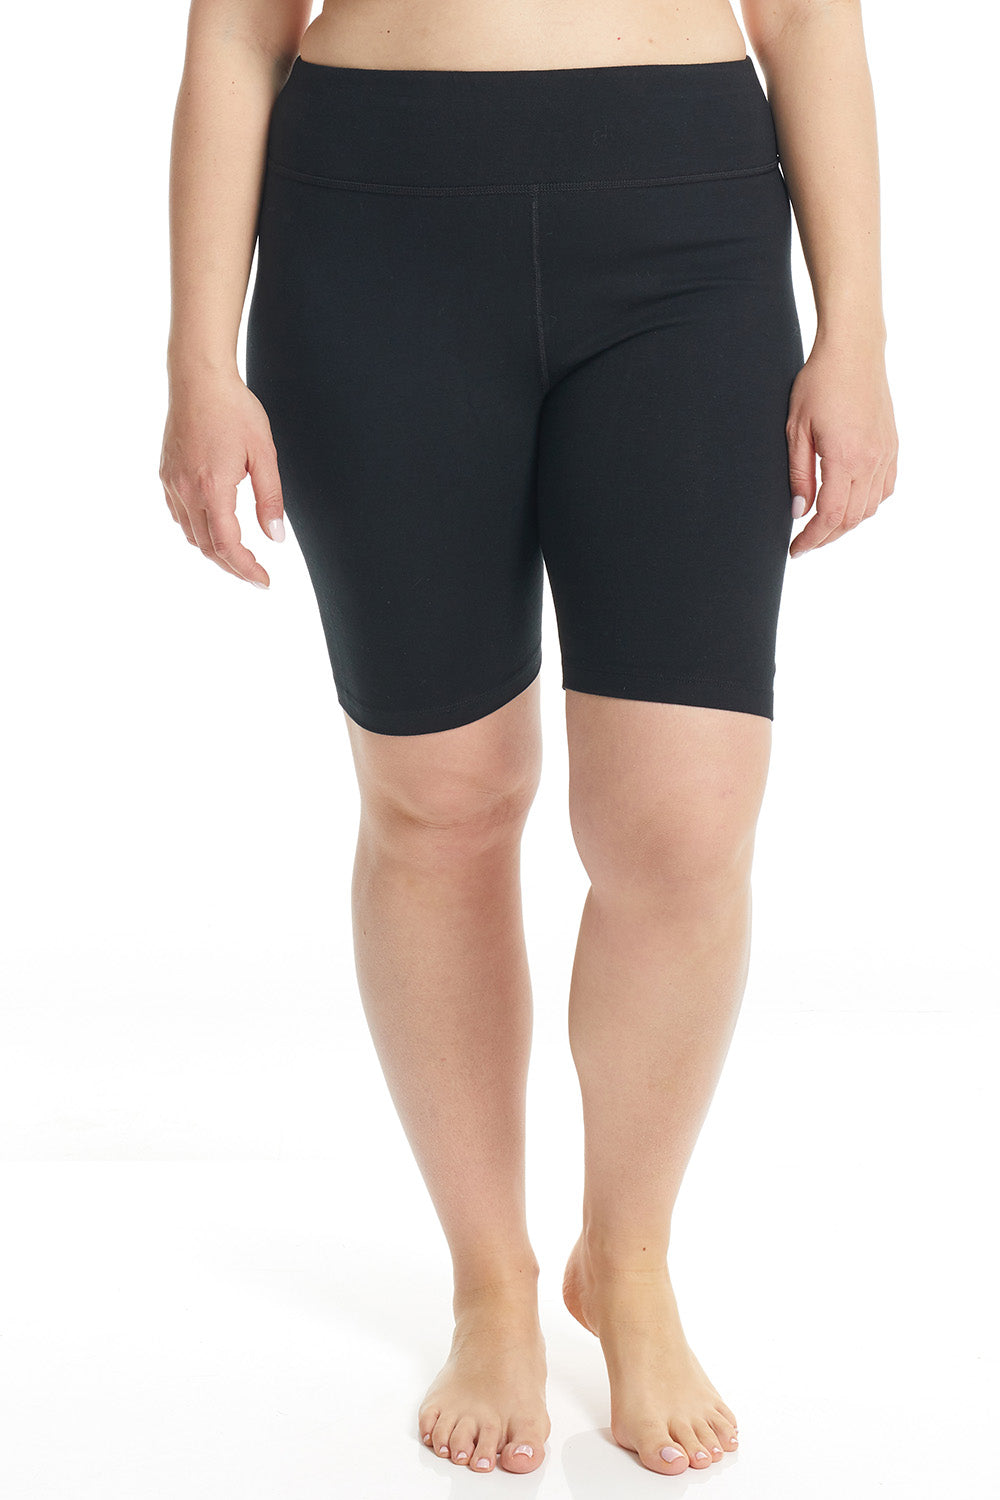 Esteez Cotton Spandex Biker Shorts for Women - BLACK